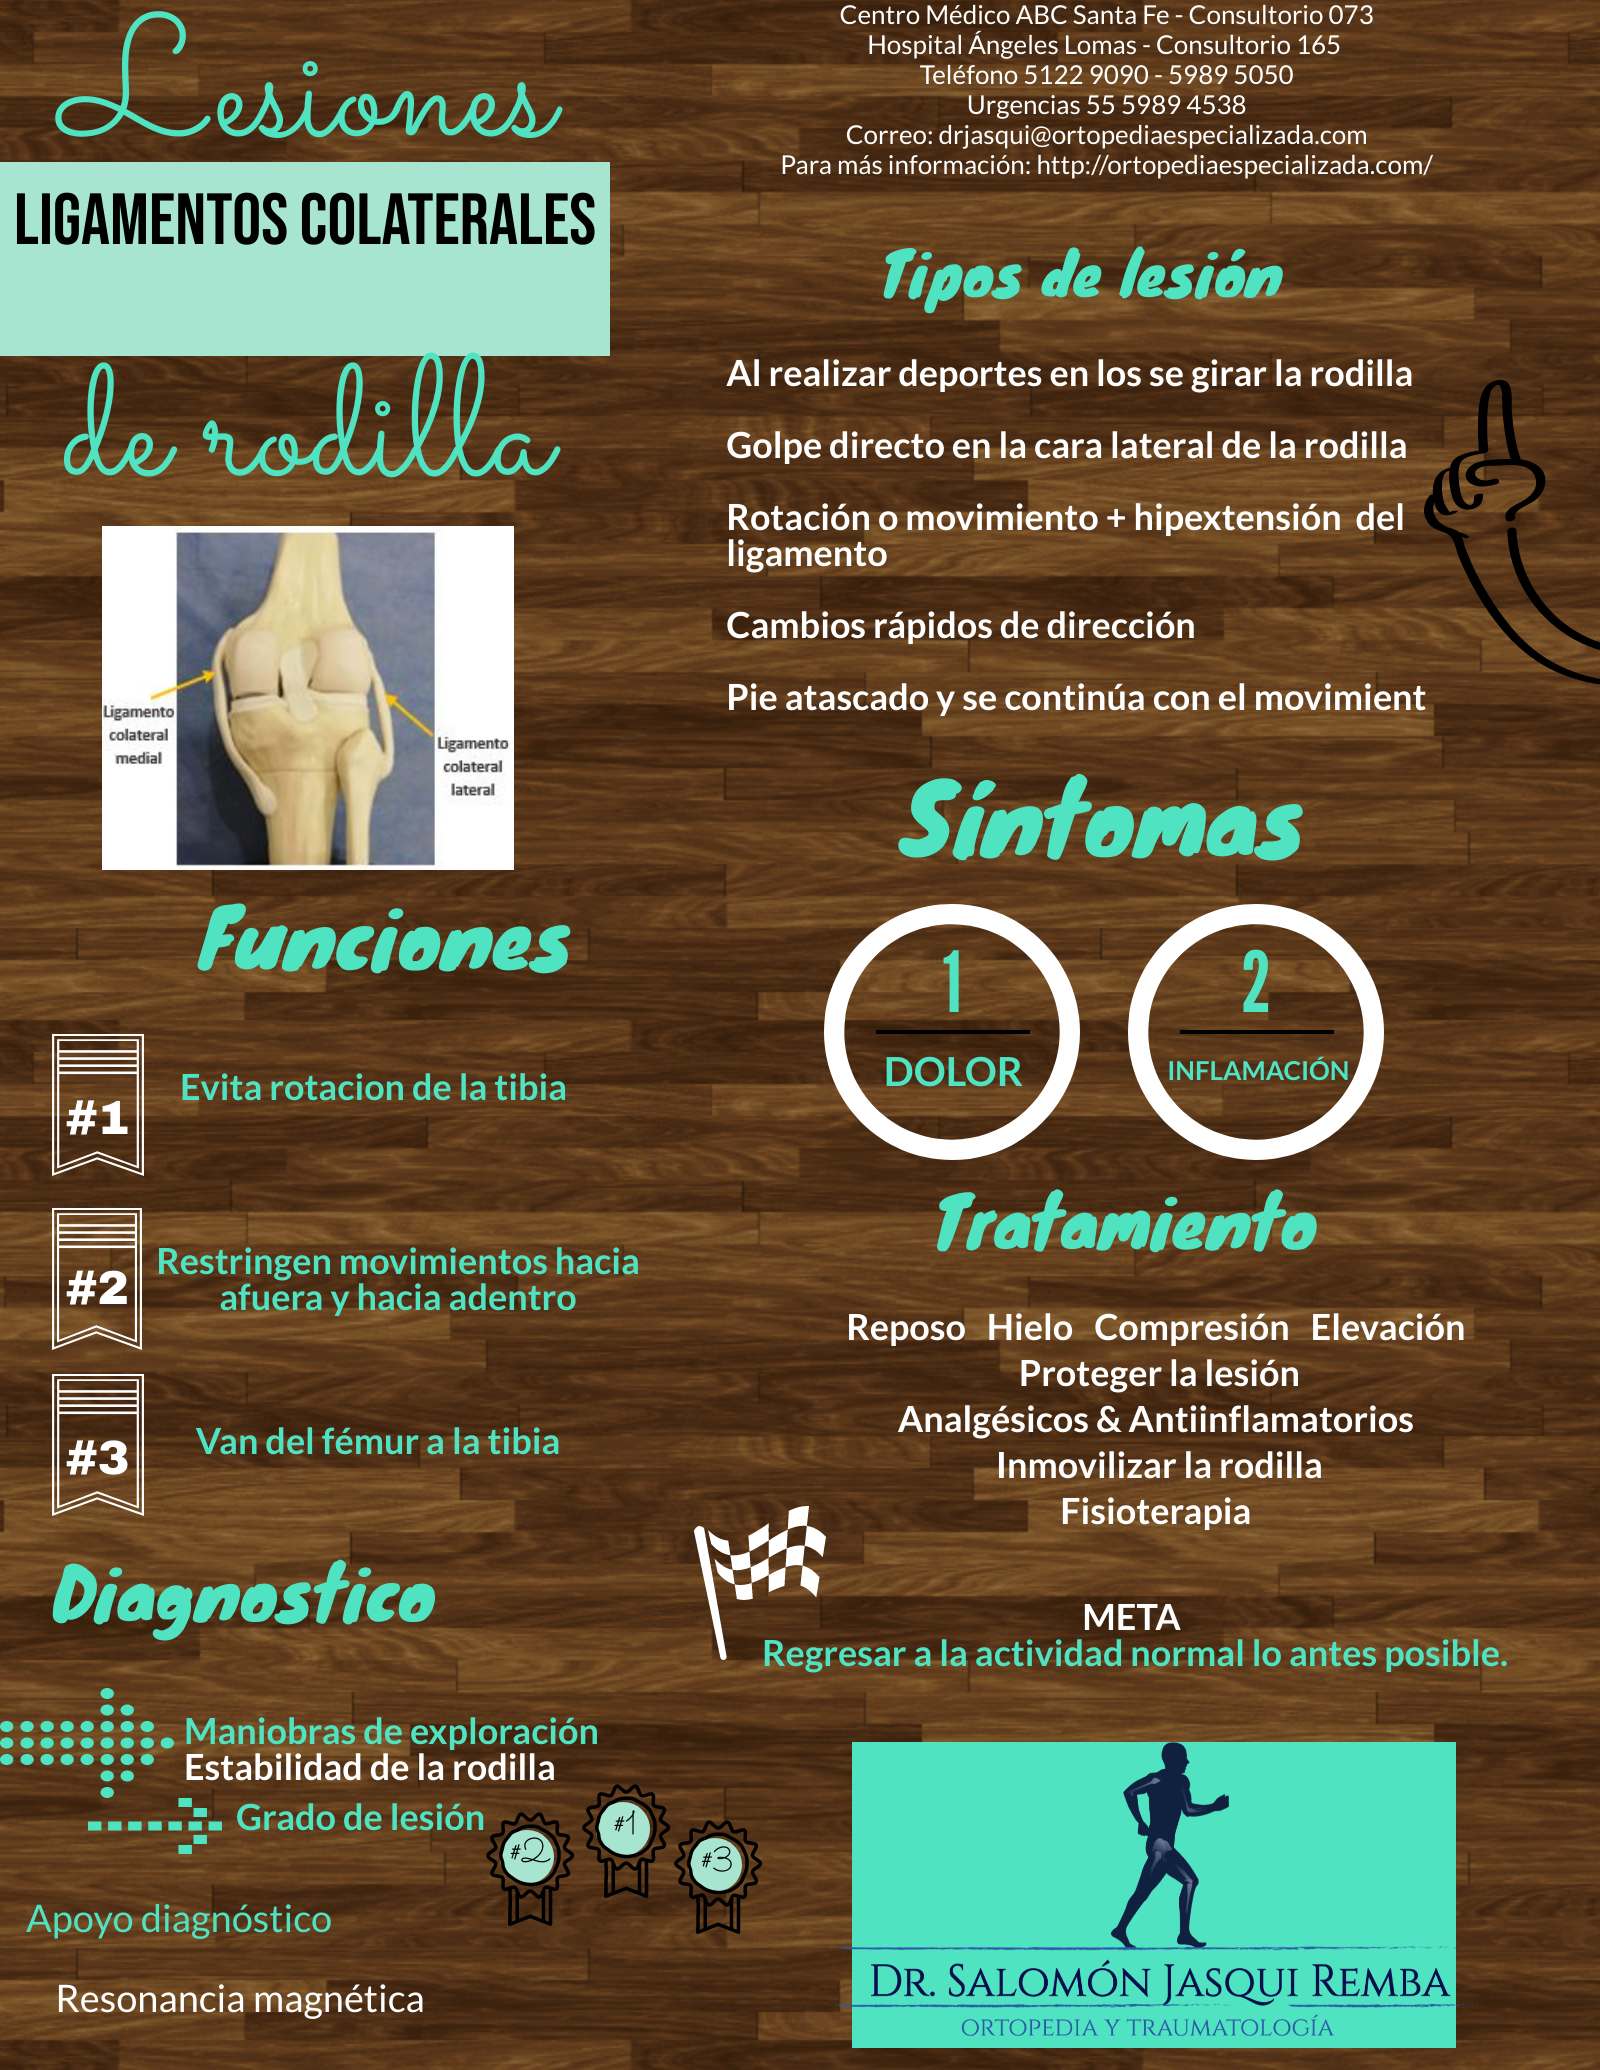 Lesión ligamentos colaterales en rodilla